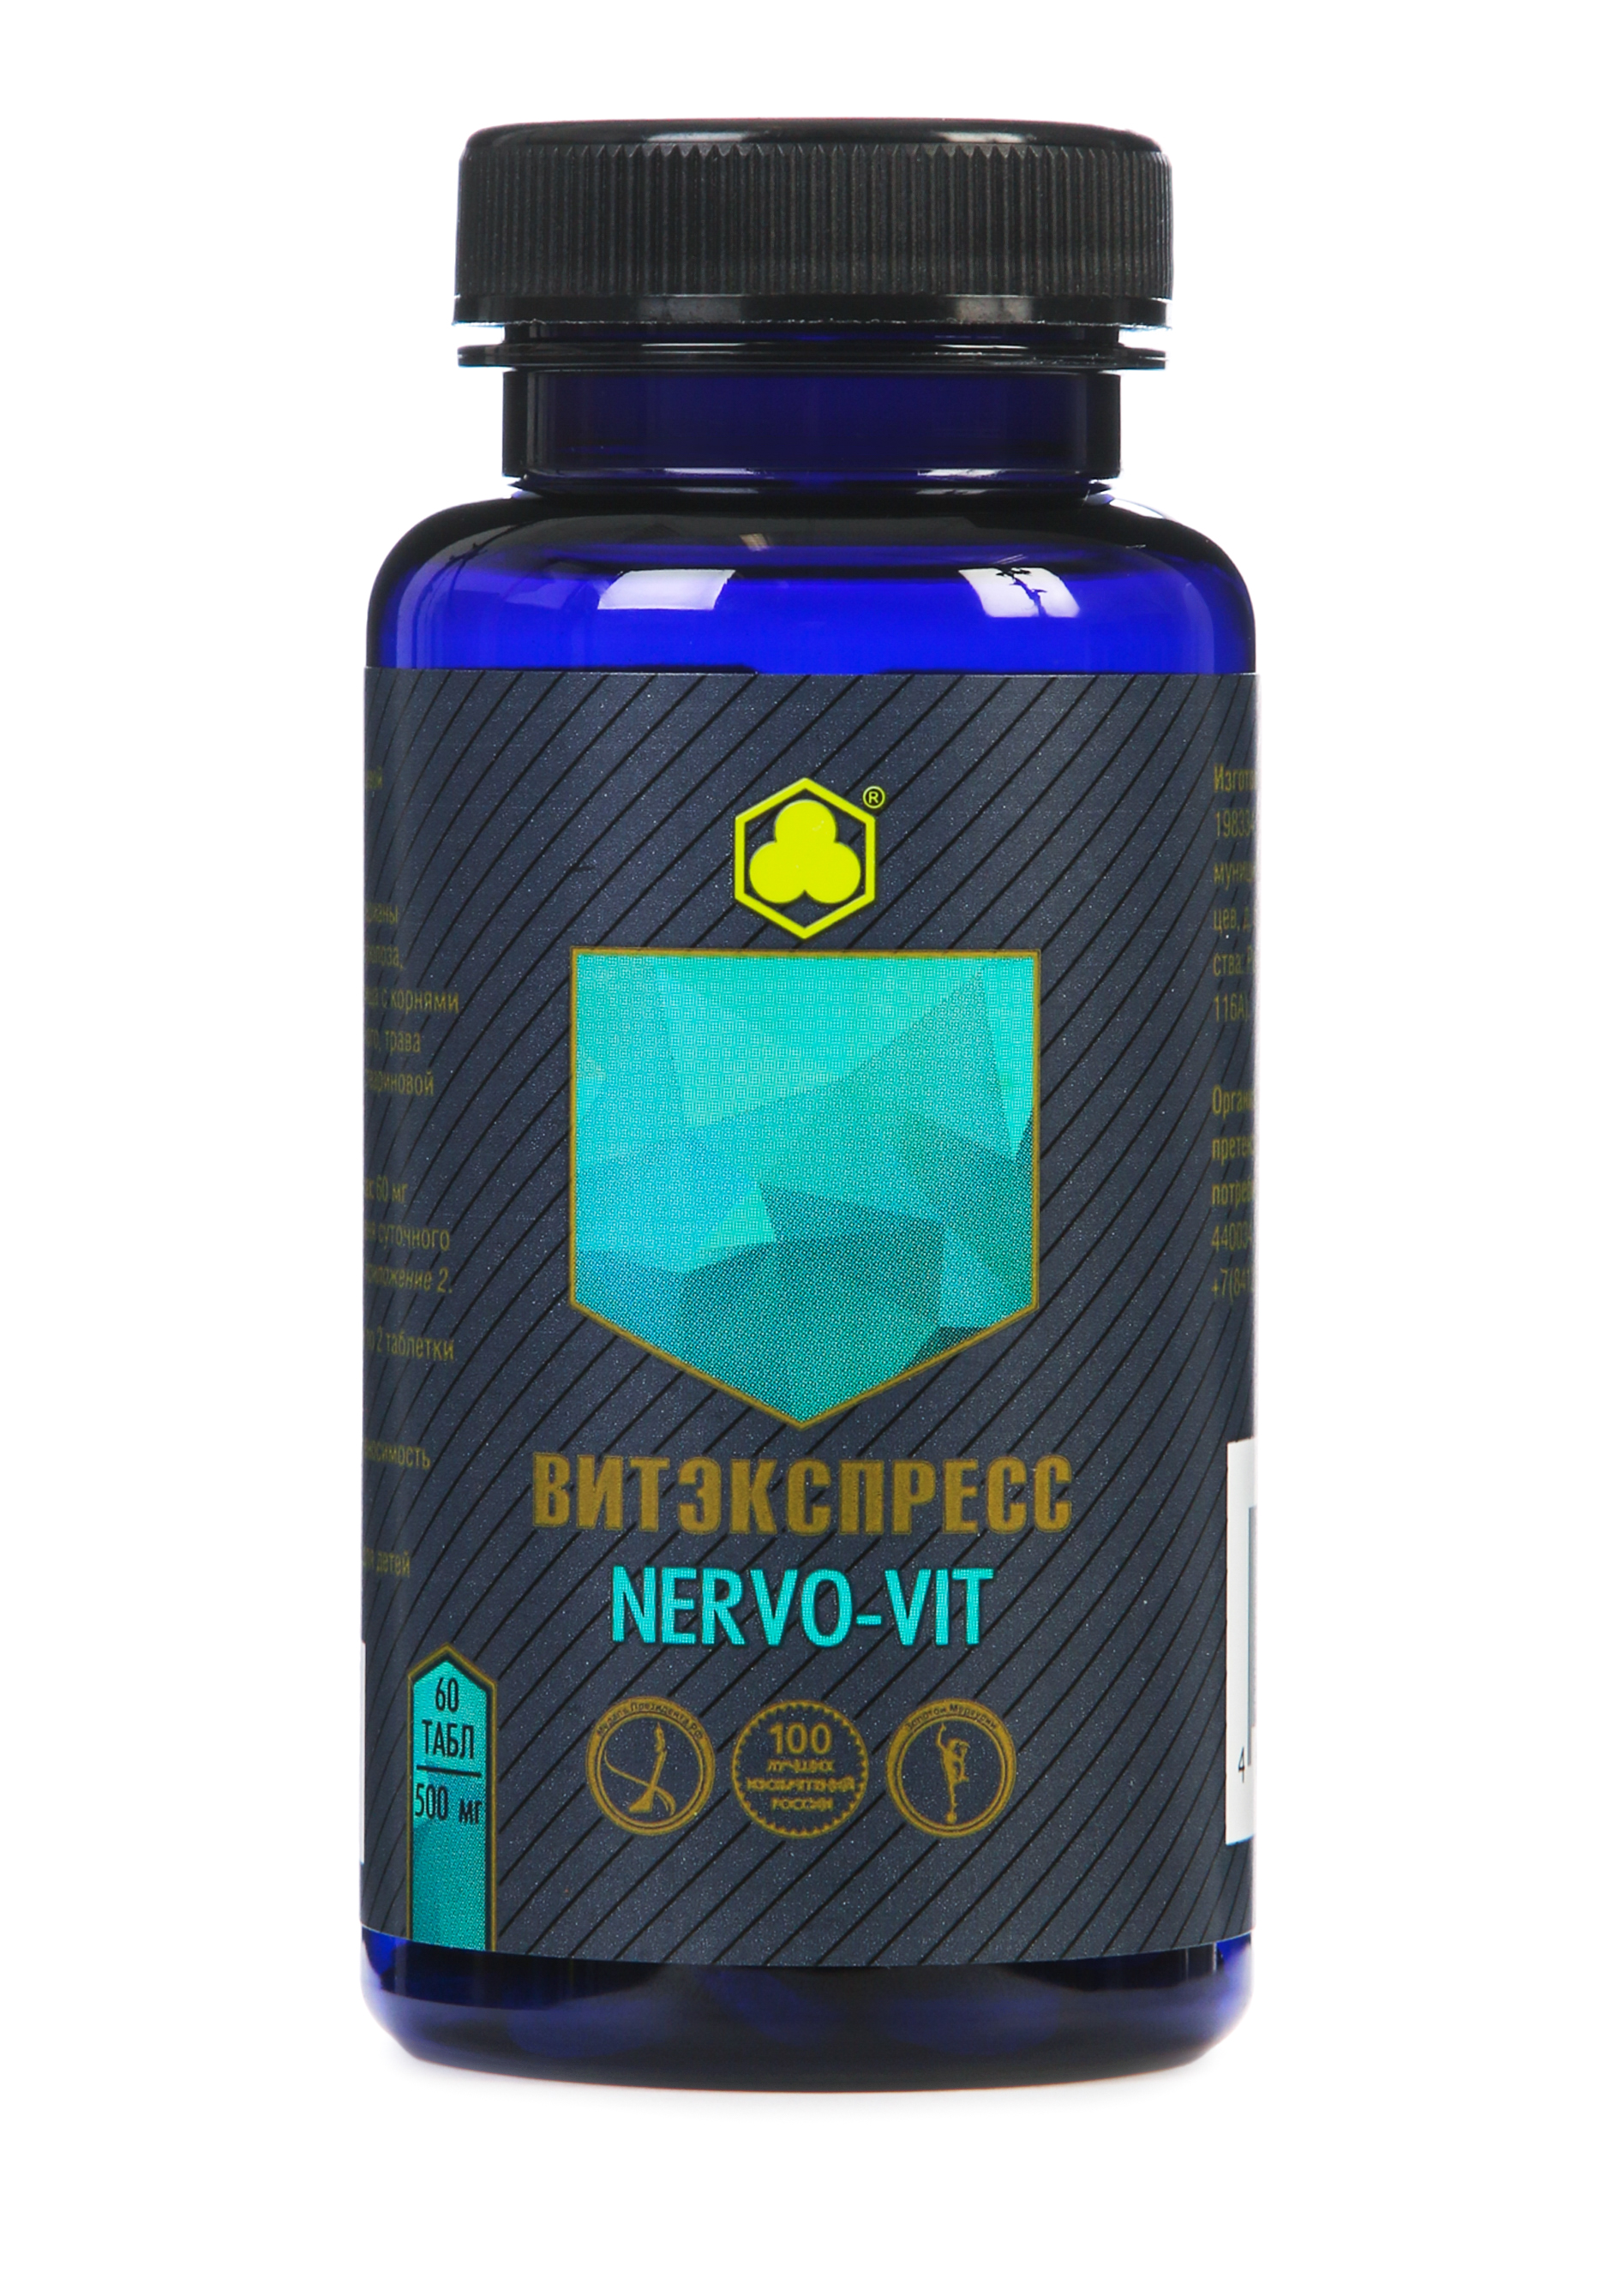 Органик-комплекс Nervo-vit